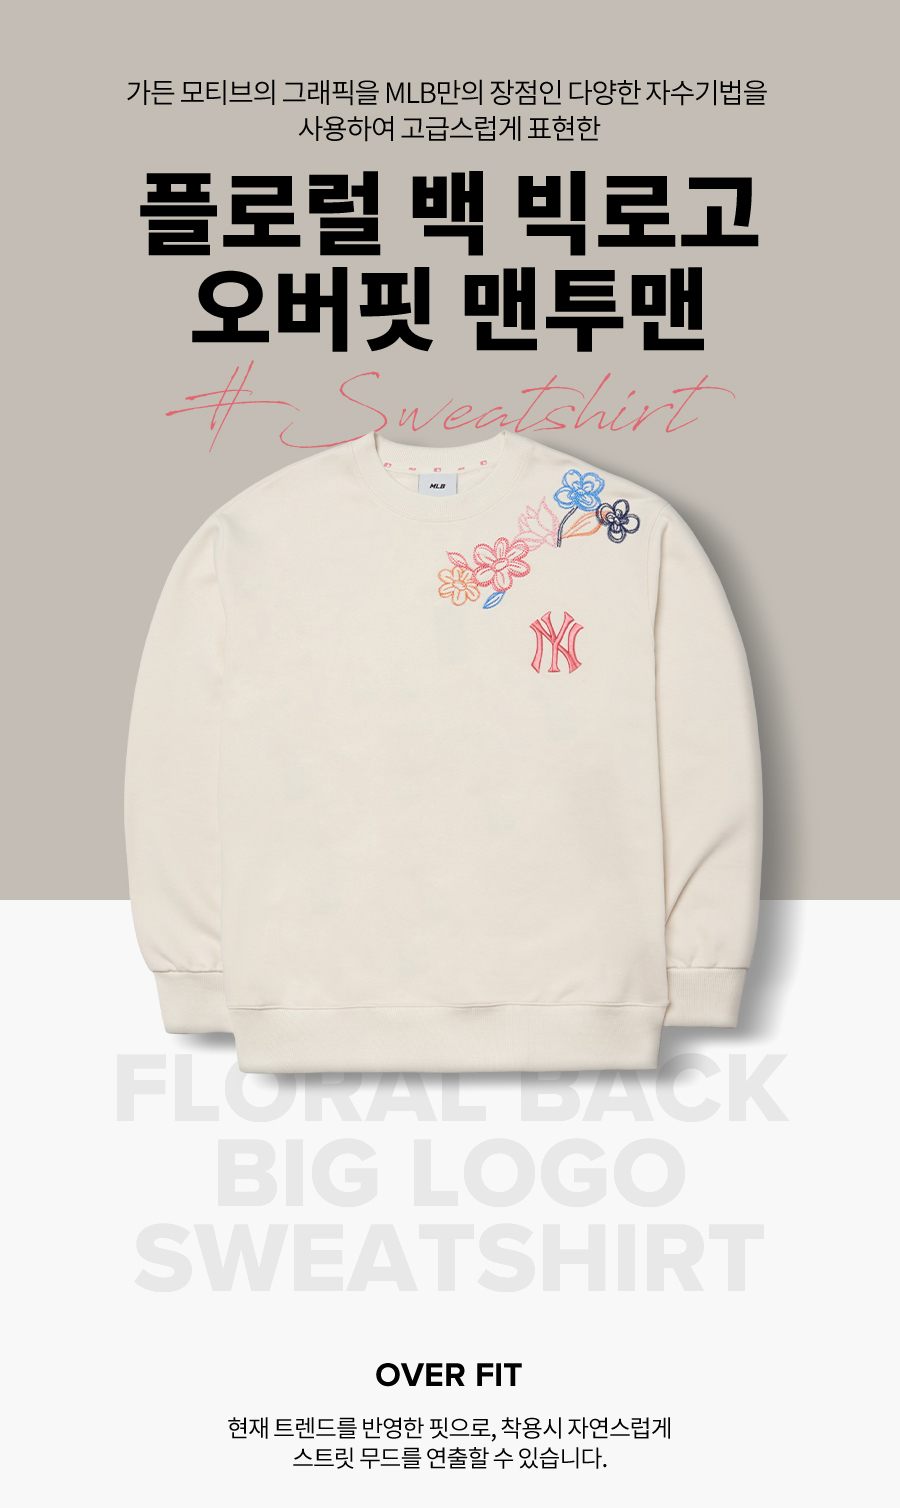 ☆関税込☆MLB☆Like Pop Art Overfit Sweatshirt☆ (MLB Korea